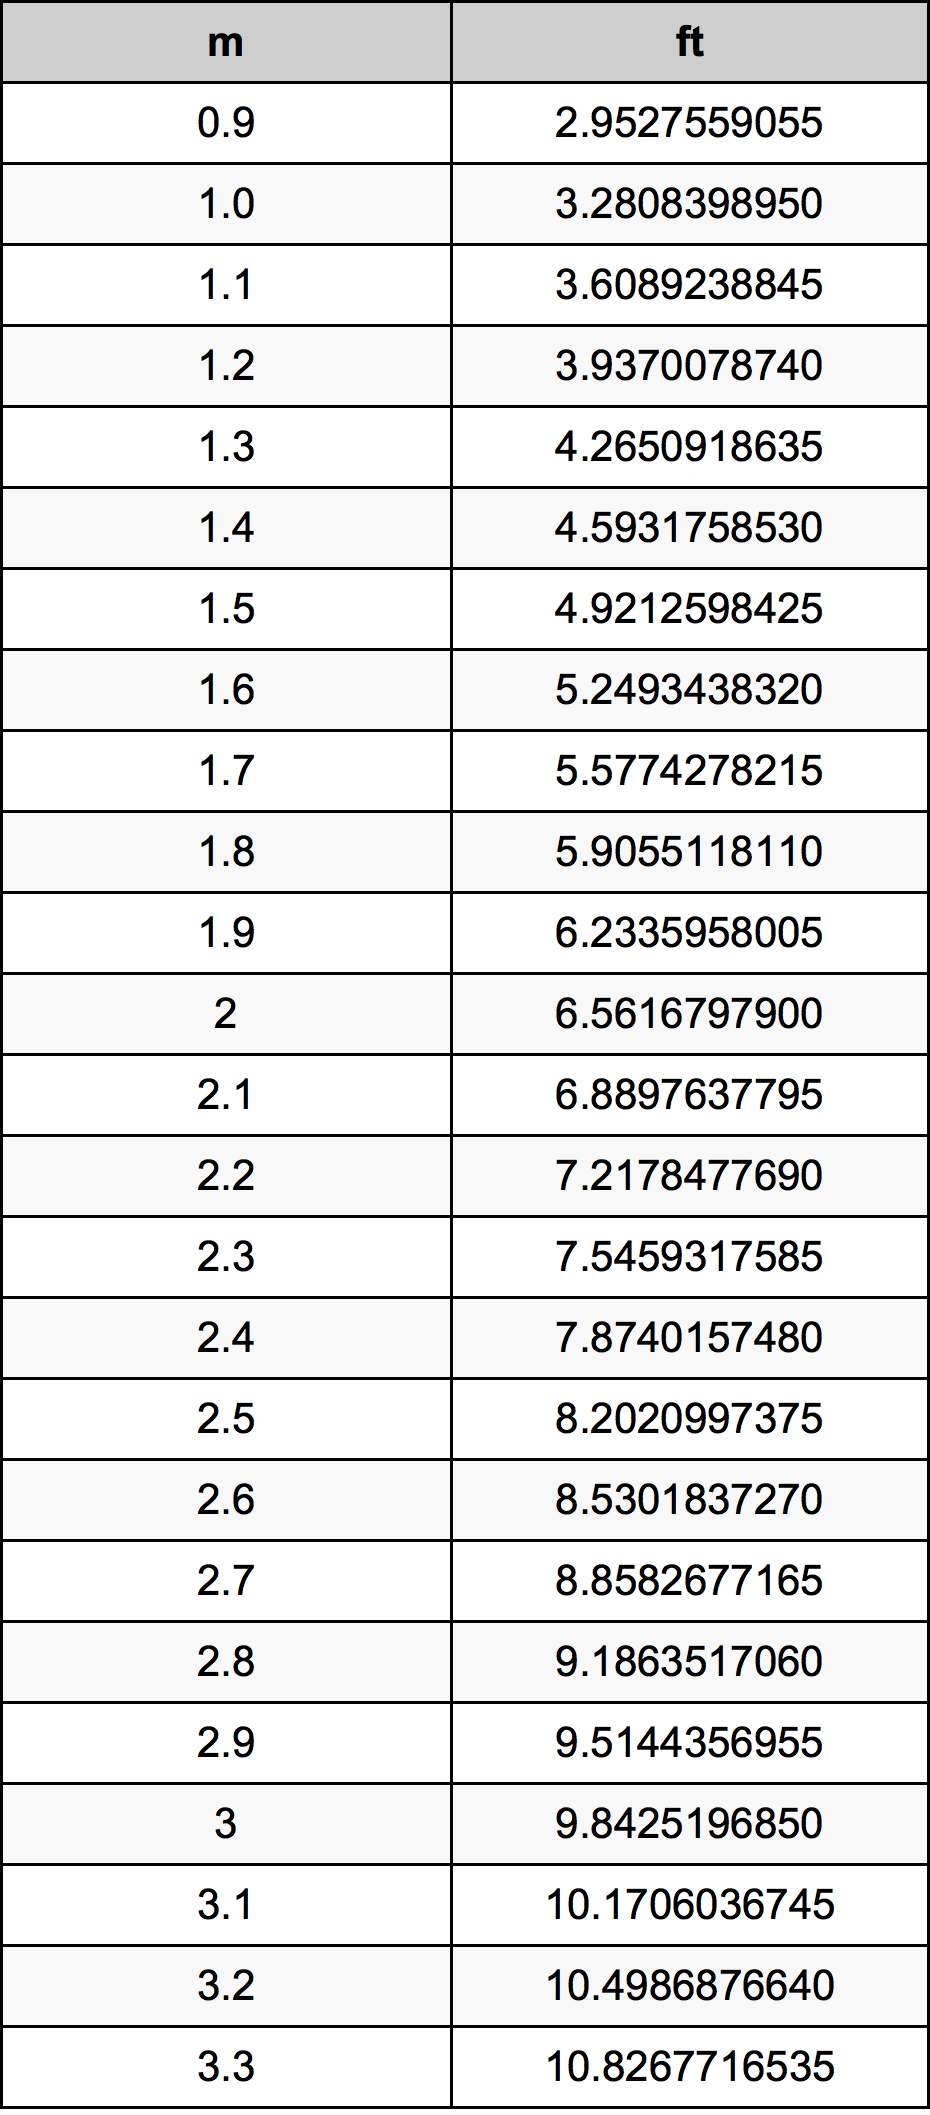 2.1 Metru tabelul de conversie